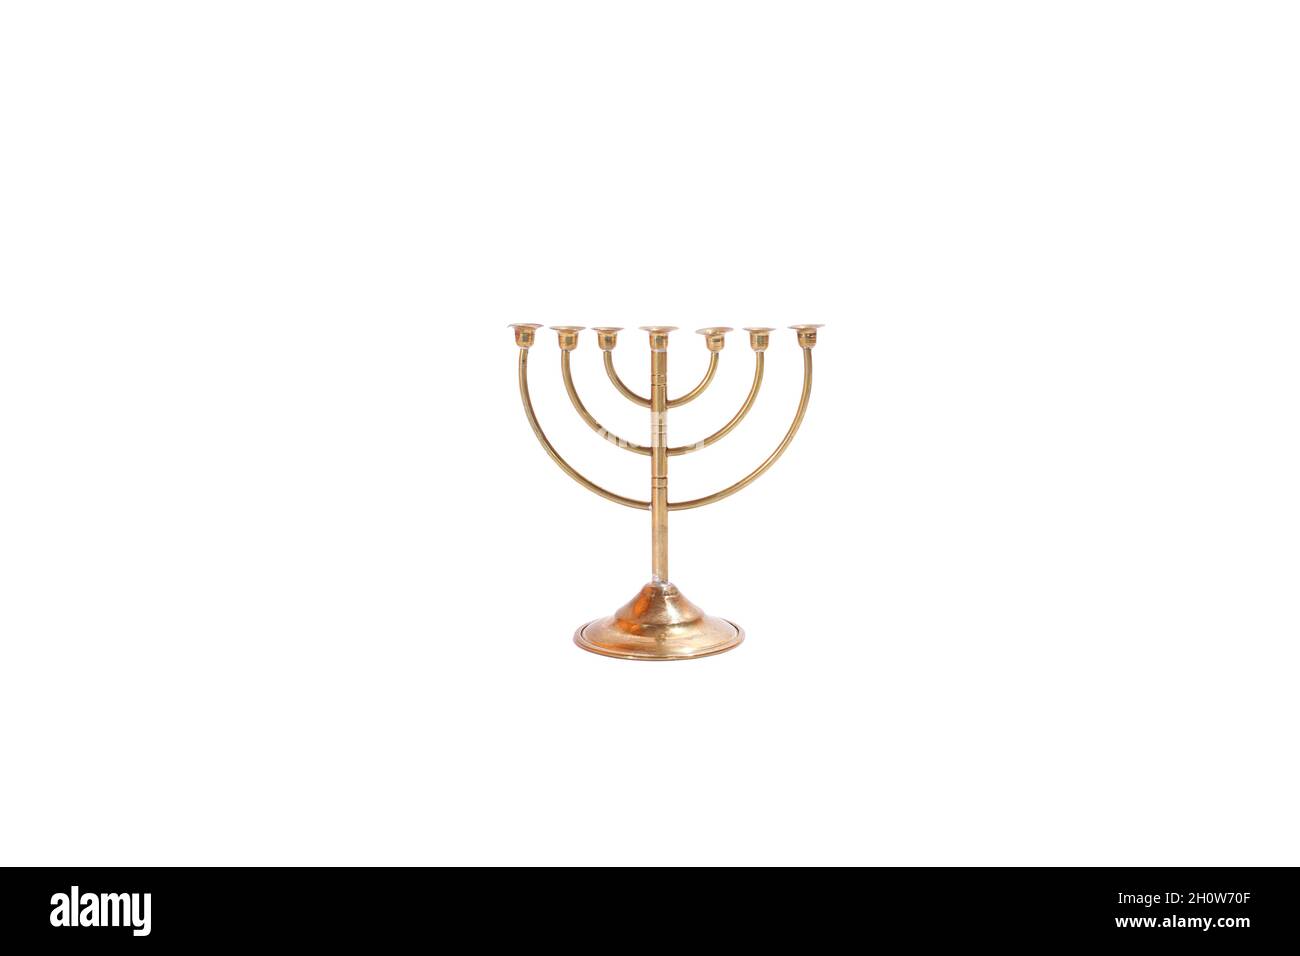 Candelabro dorado de 7 brazos, aislado sobre fondo blanco. Menorah, Judaico, Metal, Judaísmo. Foto de stock